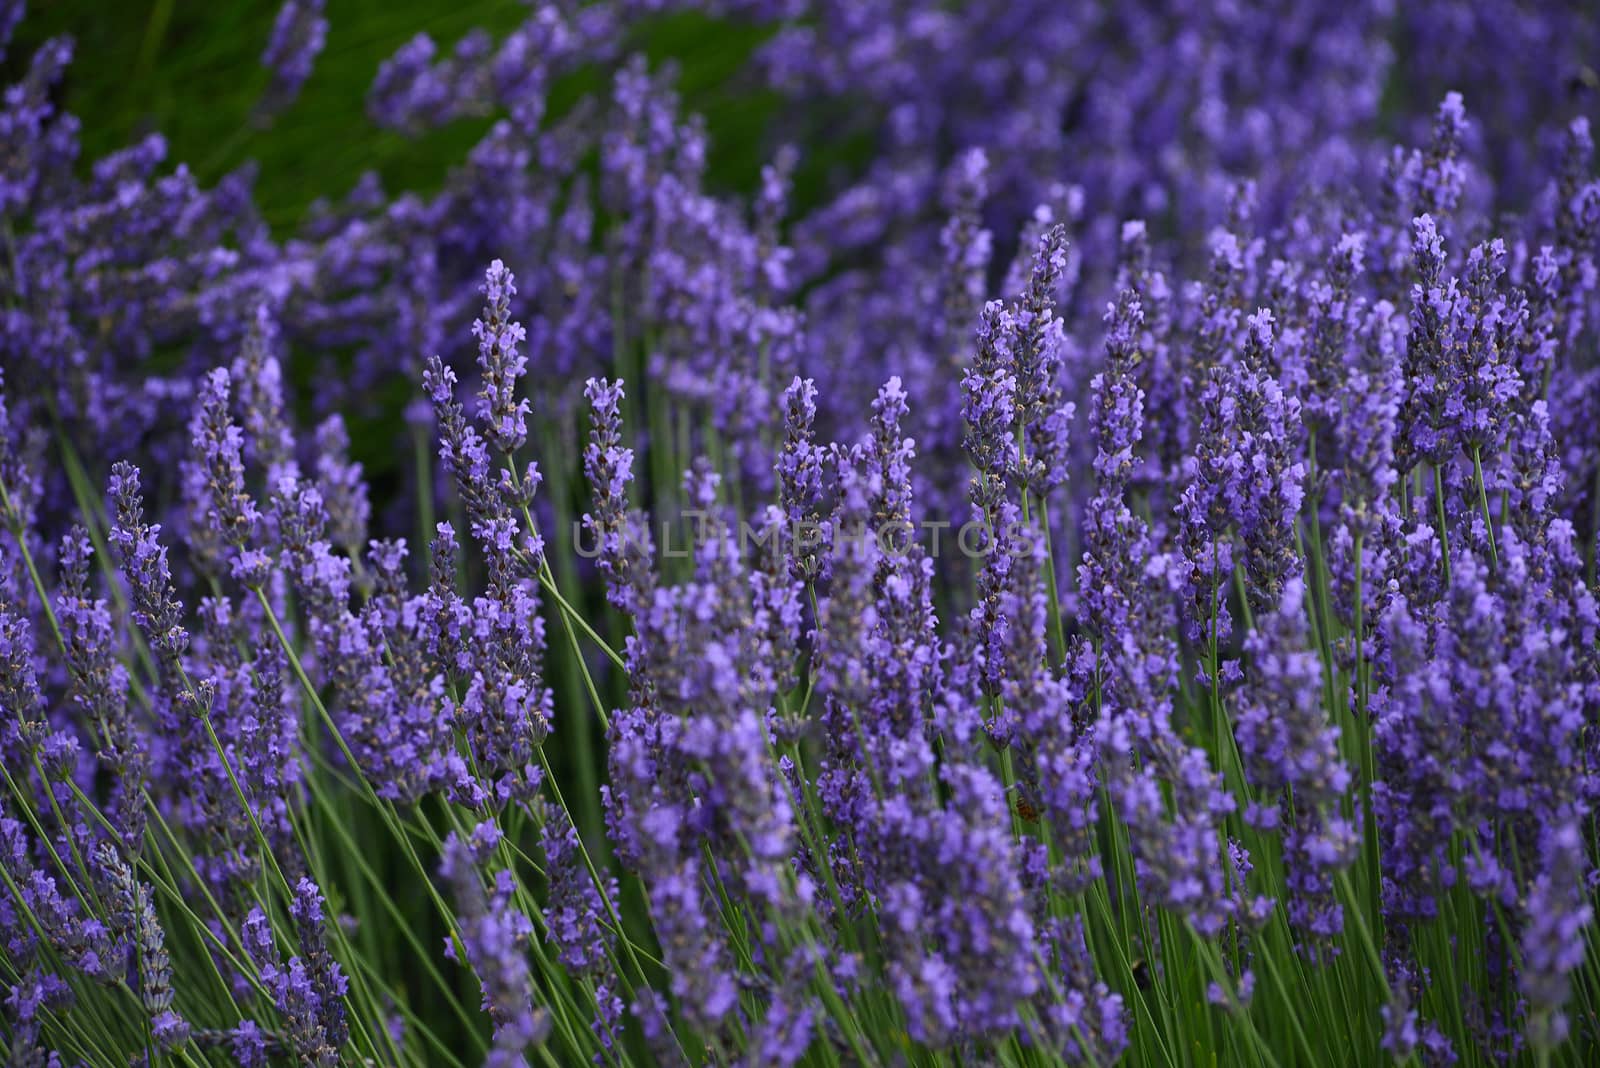 lavender flower field in oregon